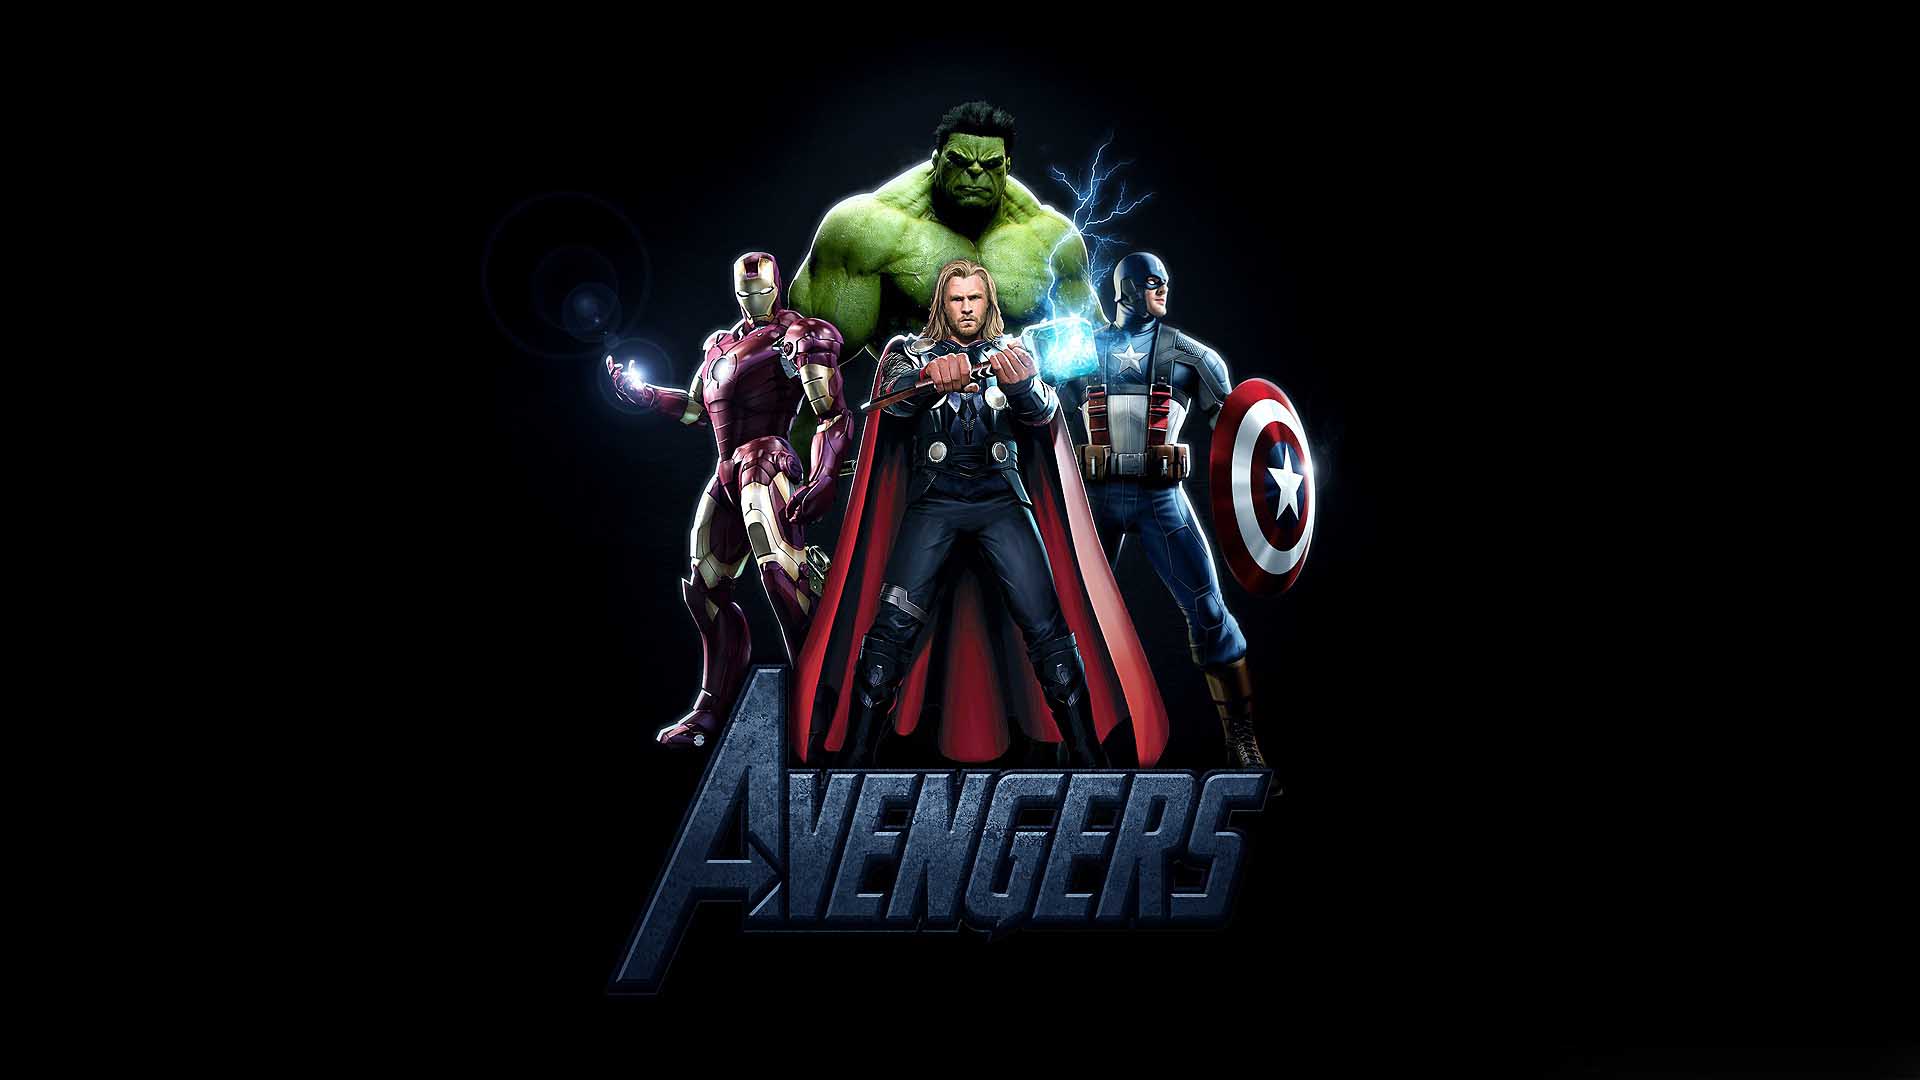 The Avengers Movie HD Wallpaper Wallpaperlepi